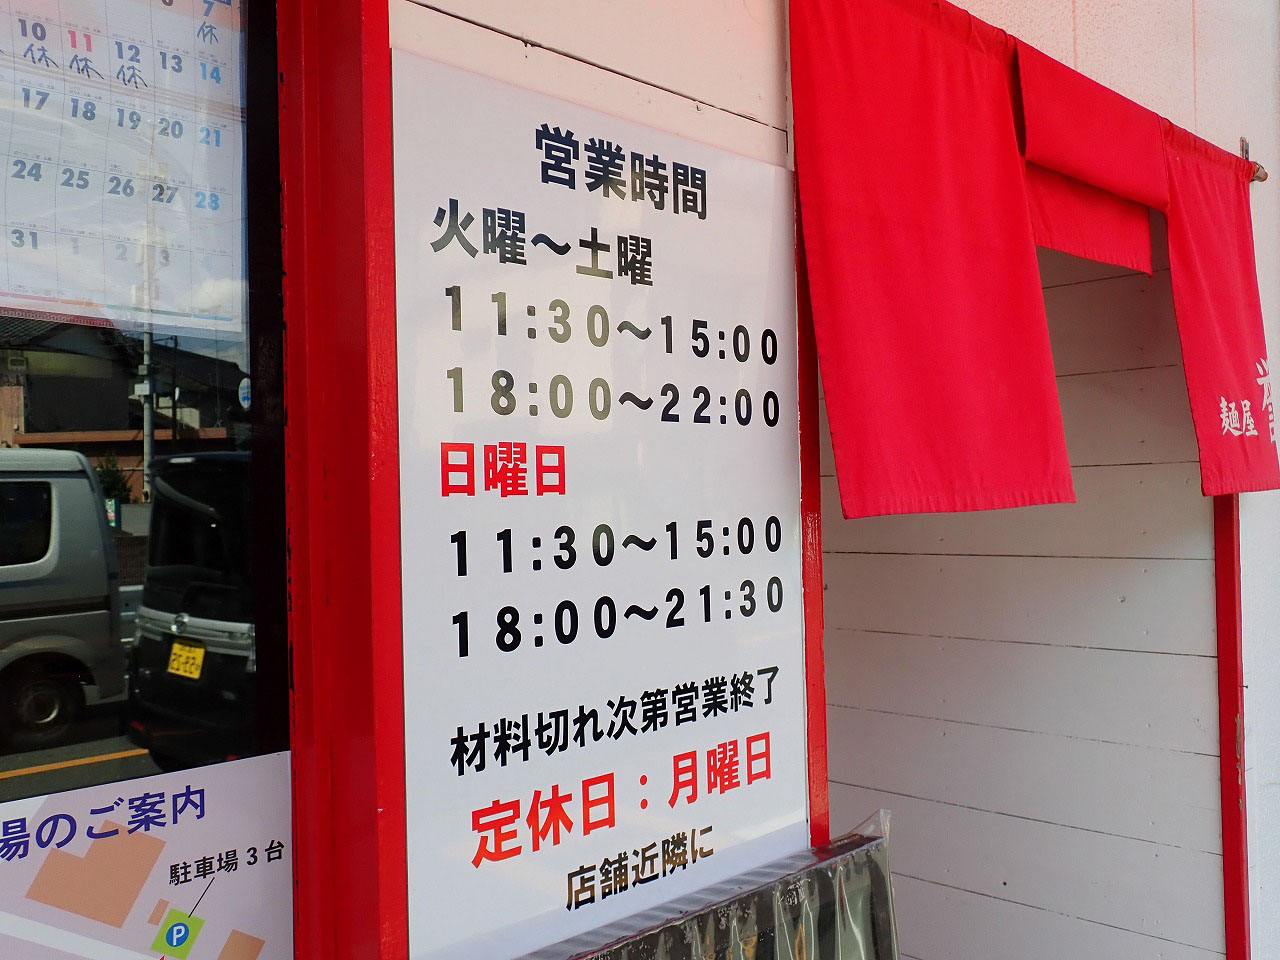 川越にあるラーメン店『麺屋 誉 HOMARE』の営業時間